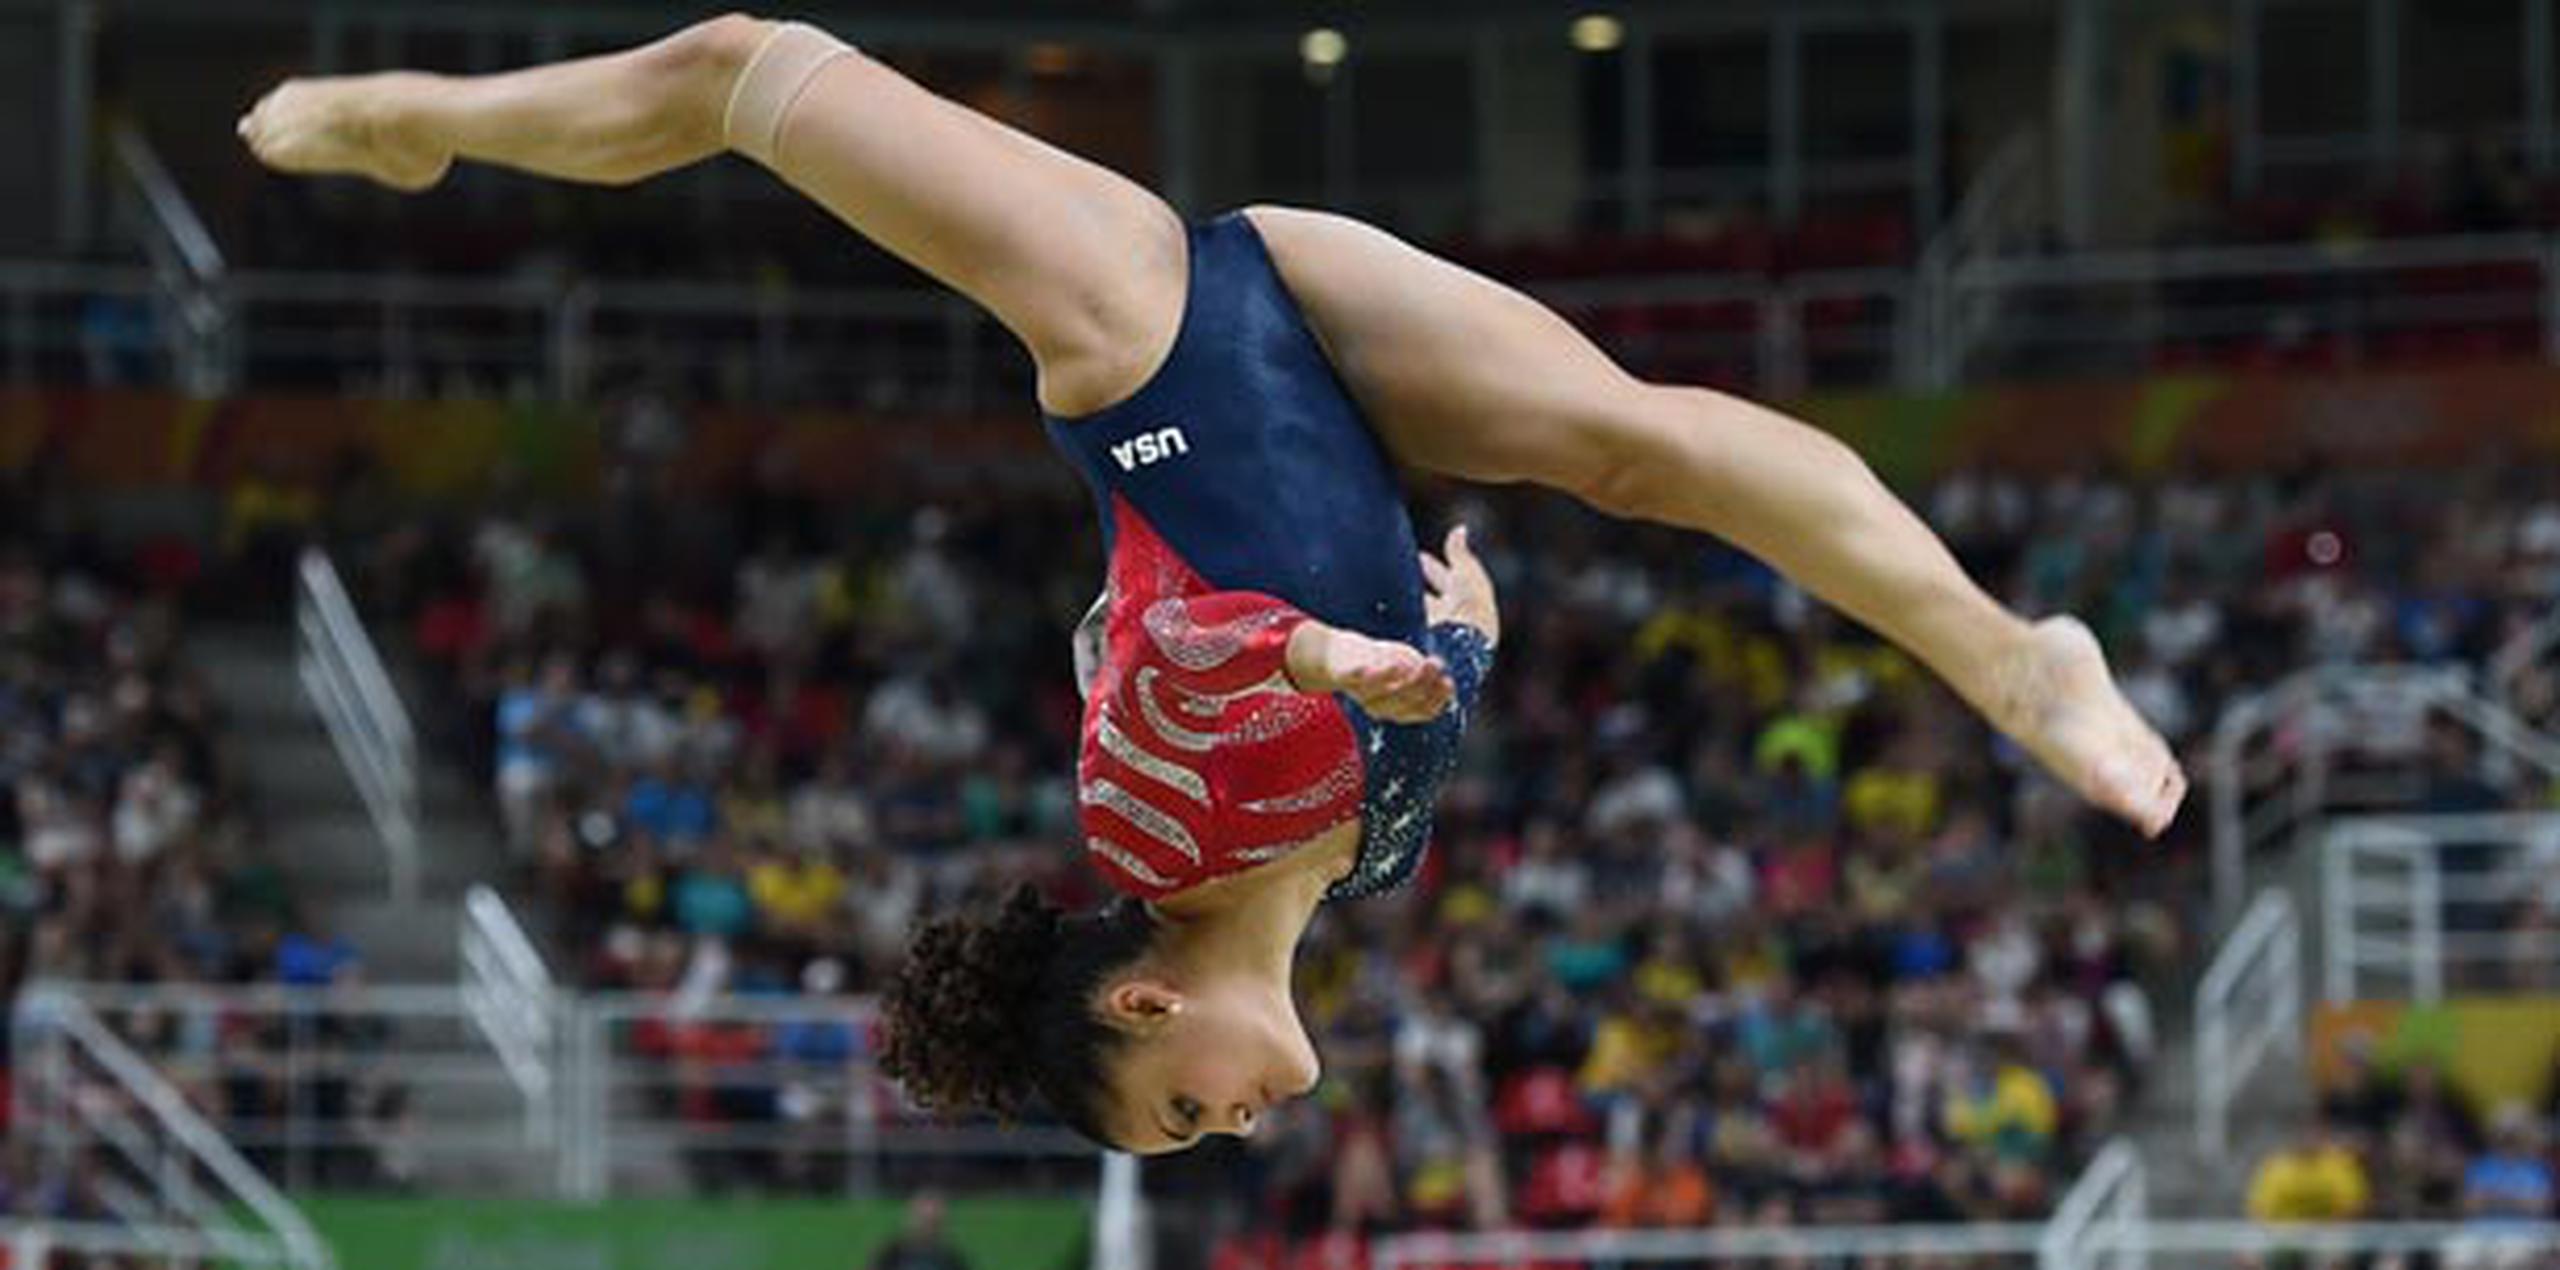 En sus primeros Juegos Olímpicos, Laurie Hernández se ha disfrutado la atención que hay sobre ella, tanto en Estados Unidos como en Puerto Rico. (Enviado especial / andre.kang@gfrmedia.com)